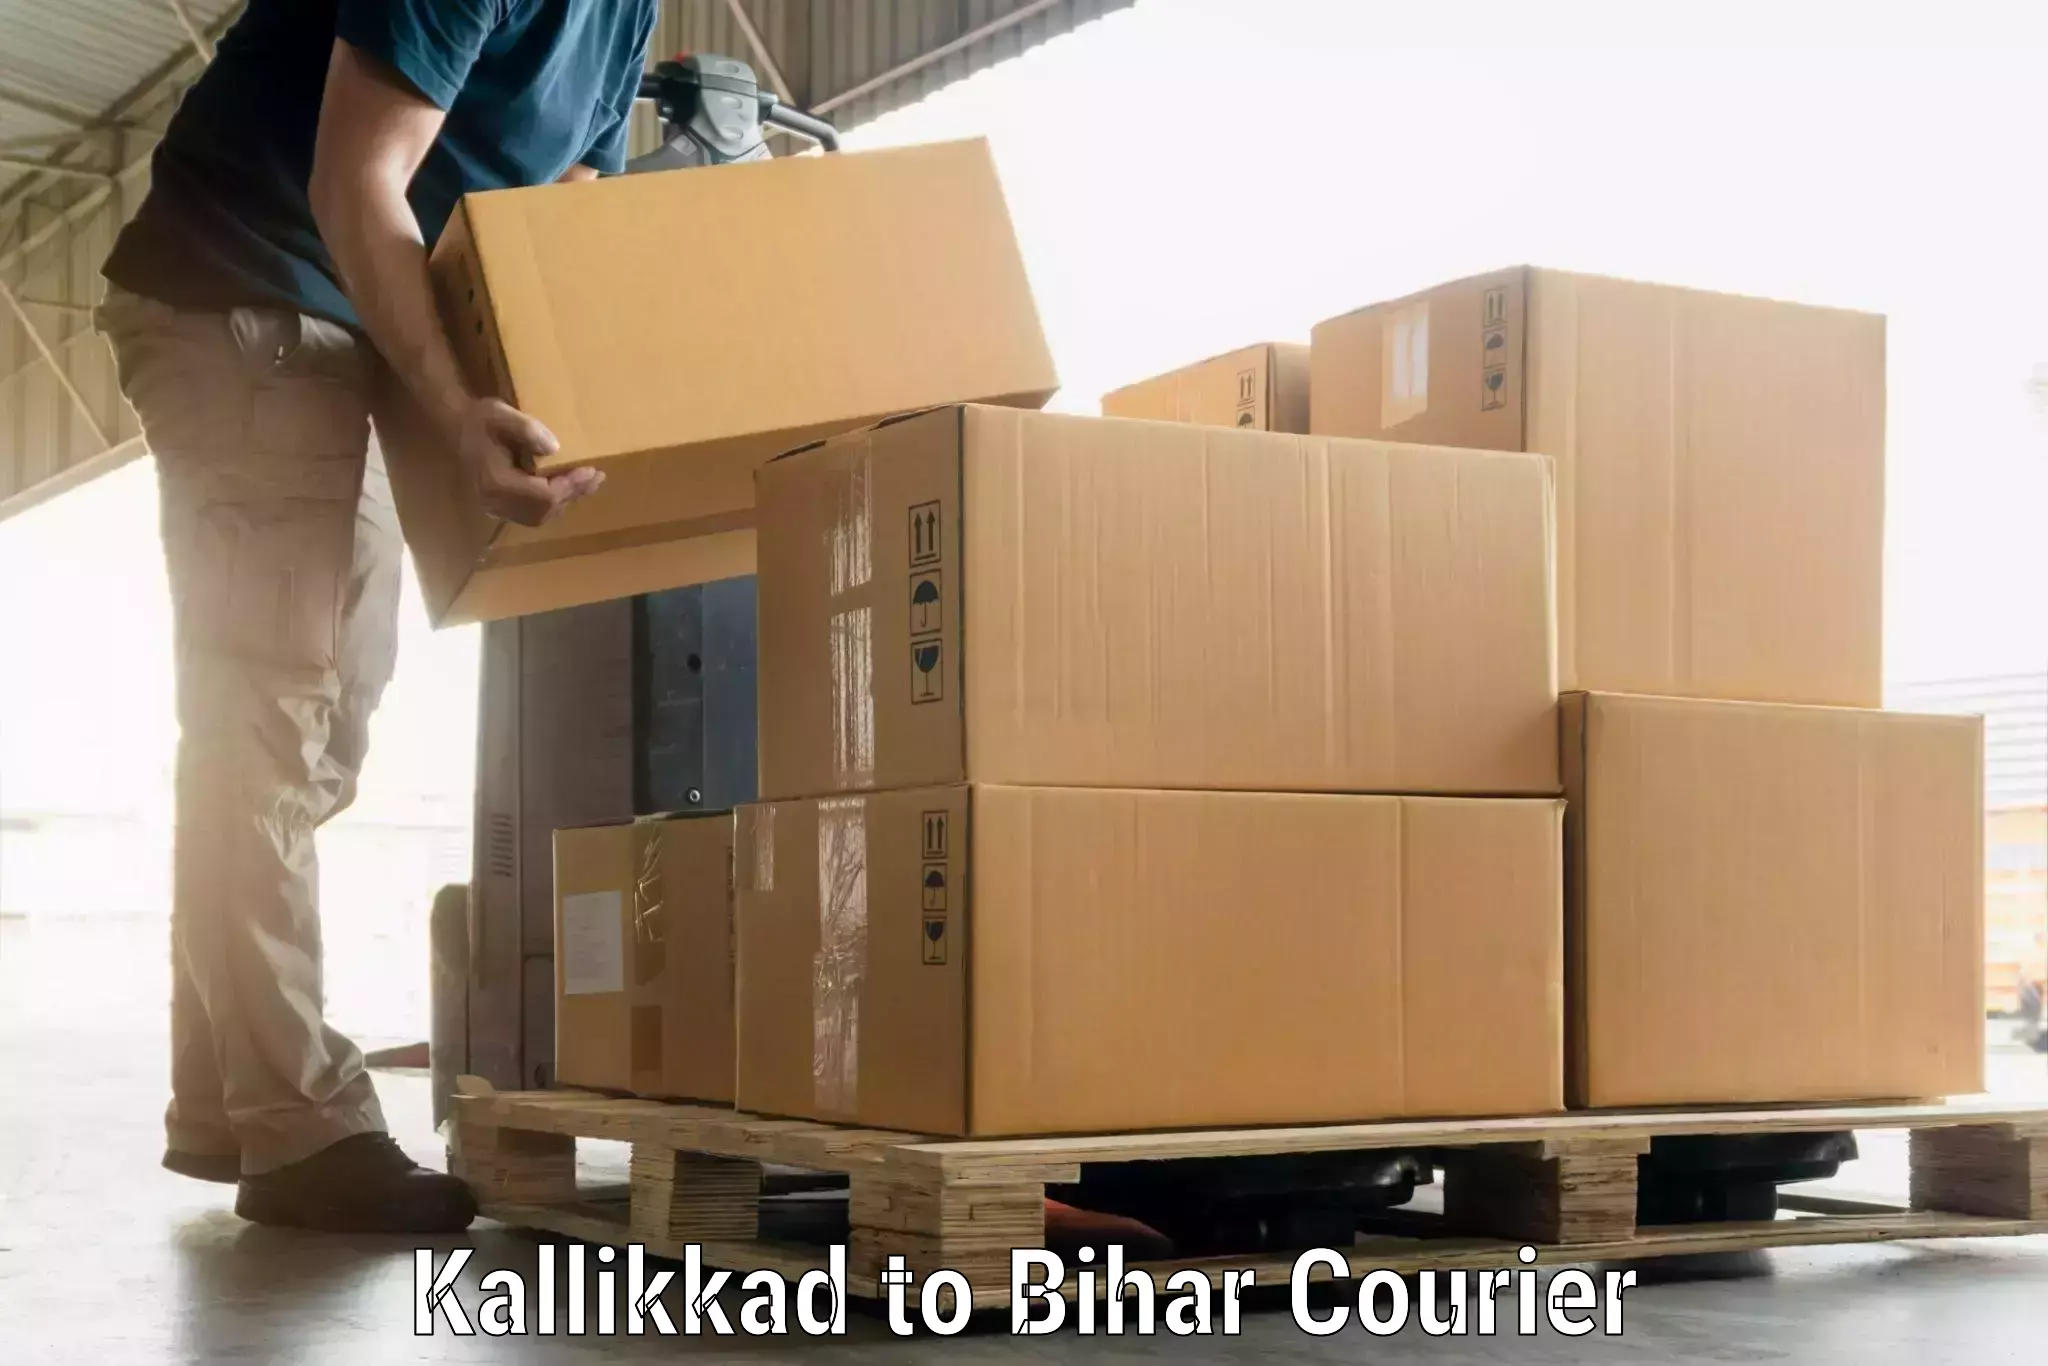 Luggage transport solutions Kallikkad to Bihar